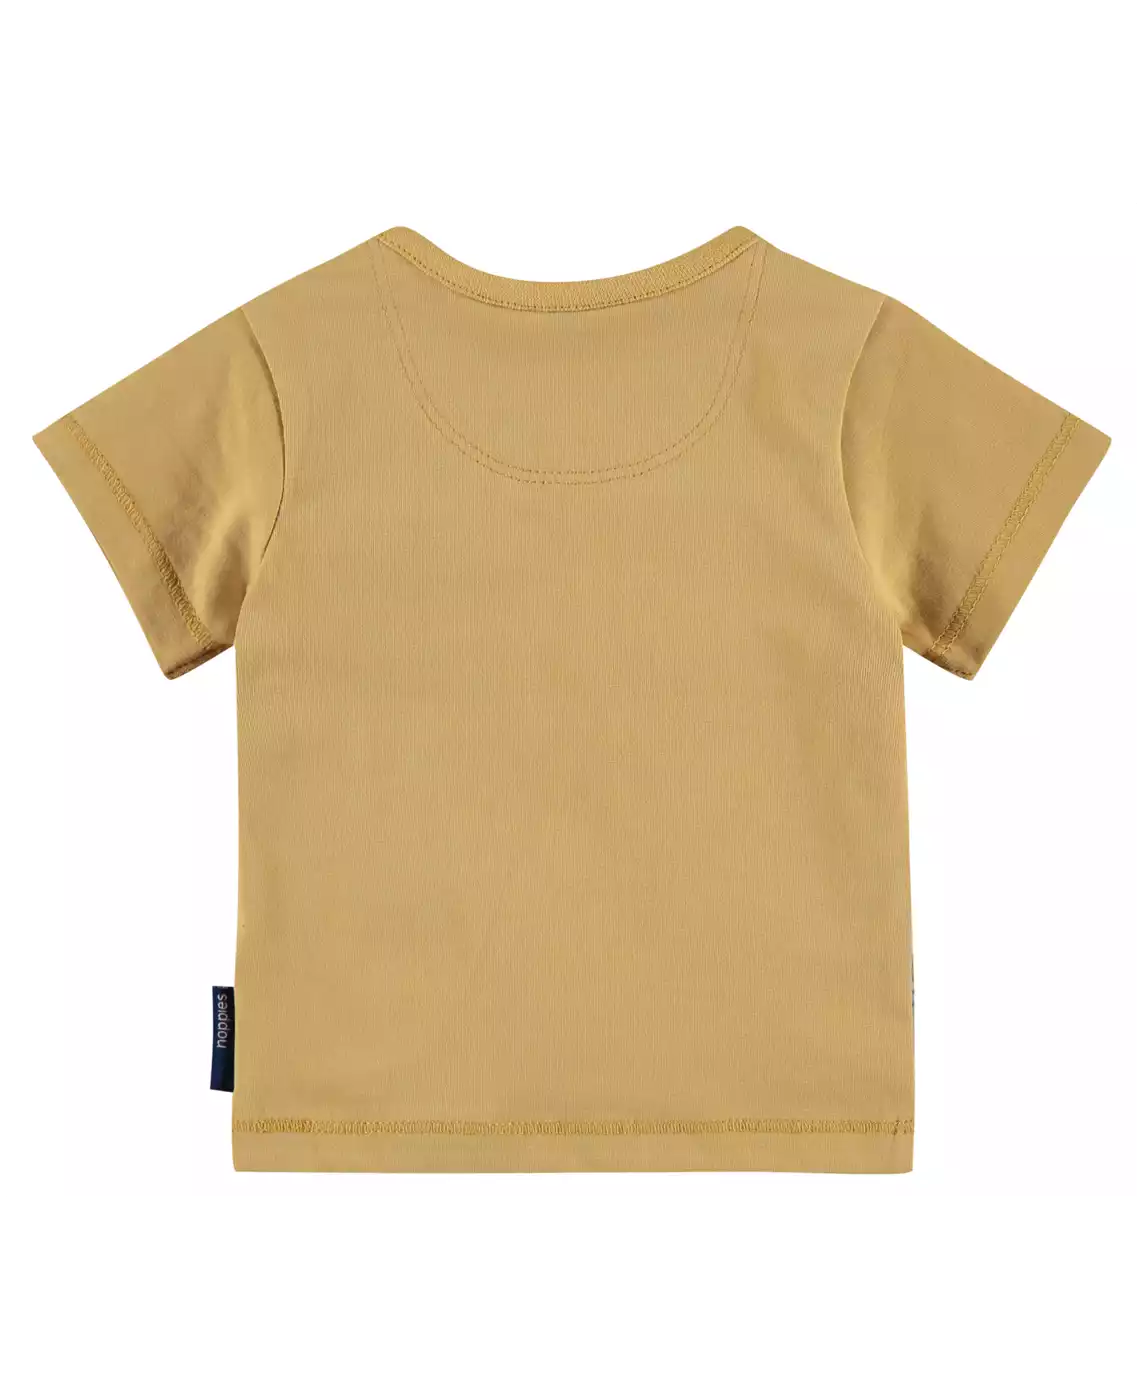 T-Shirt Lathrop noppies Schwarz Weiß Gelb 2006572468802 4